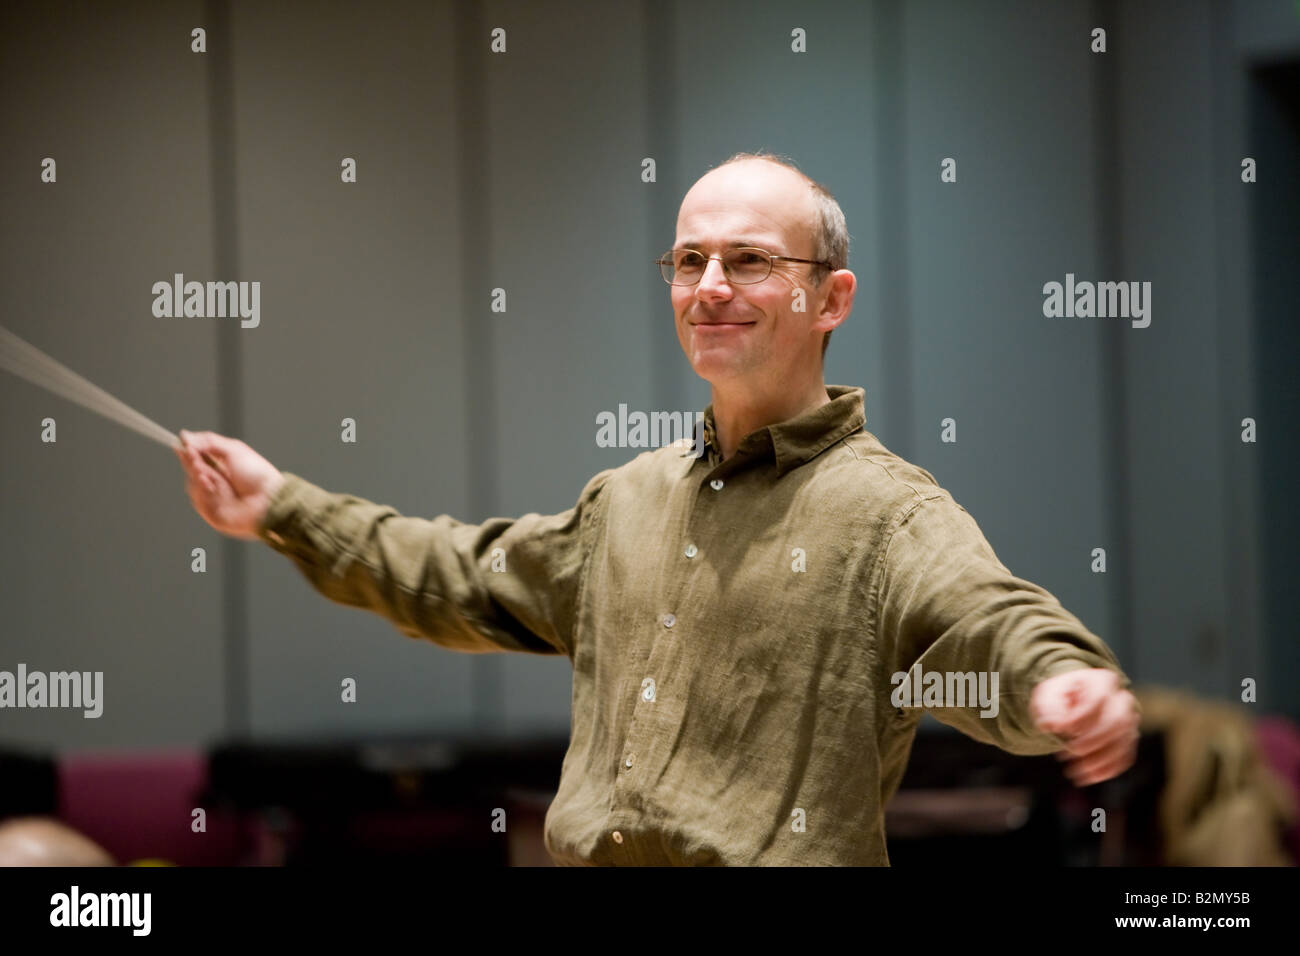 The conductor Professor Ruediger Bohn at work. Stock Photo